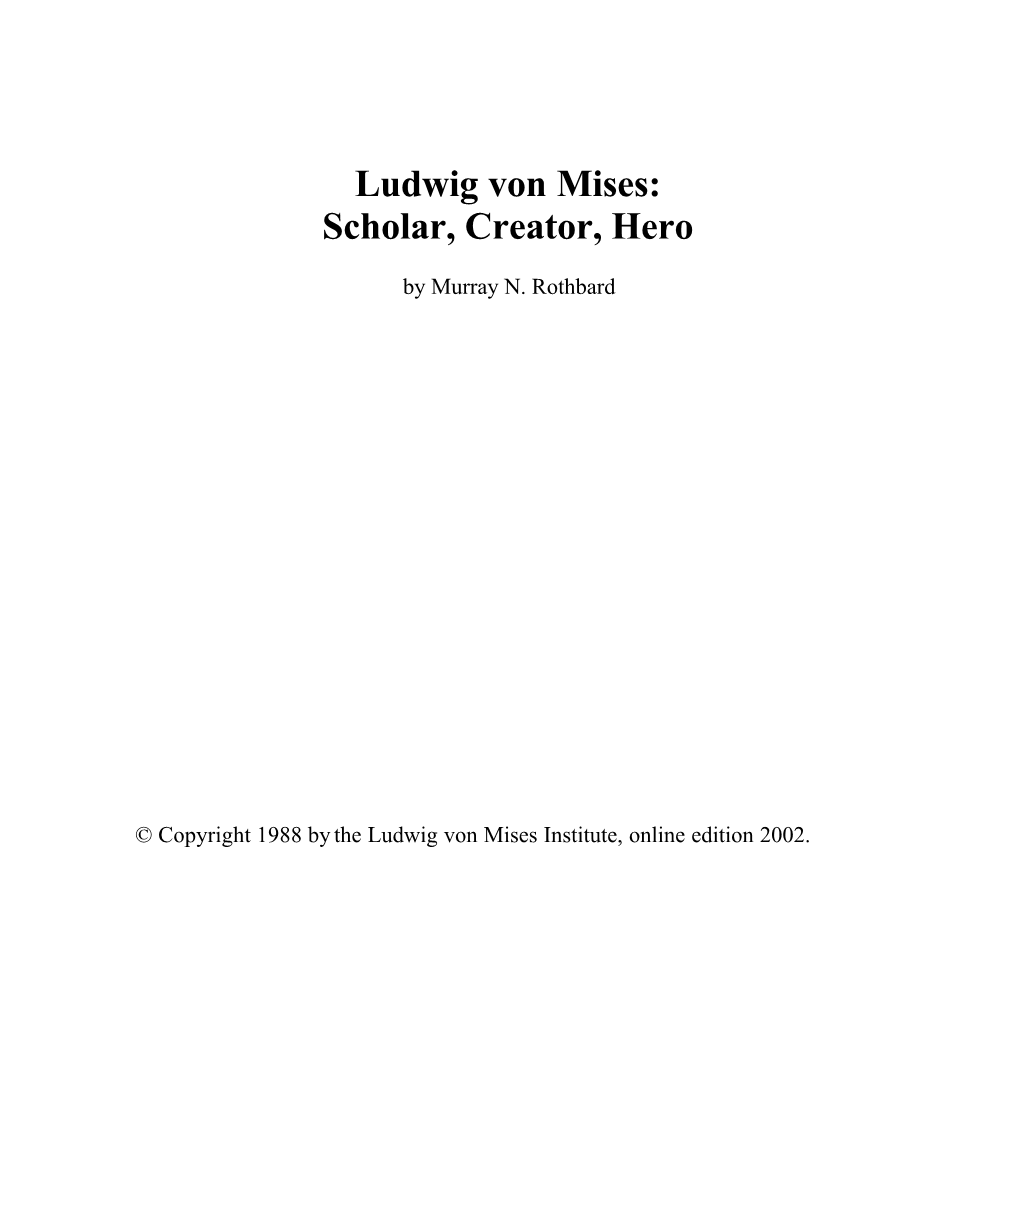 Ludwig Von Mises: Scholar, Creator, Hero